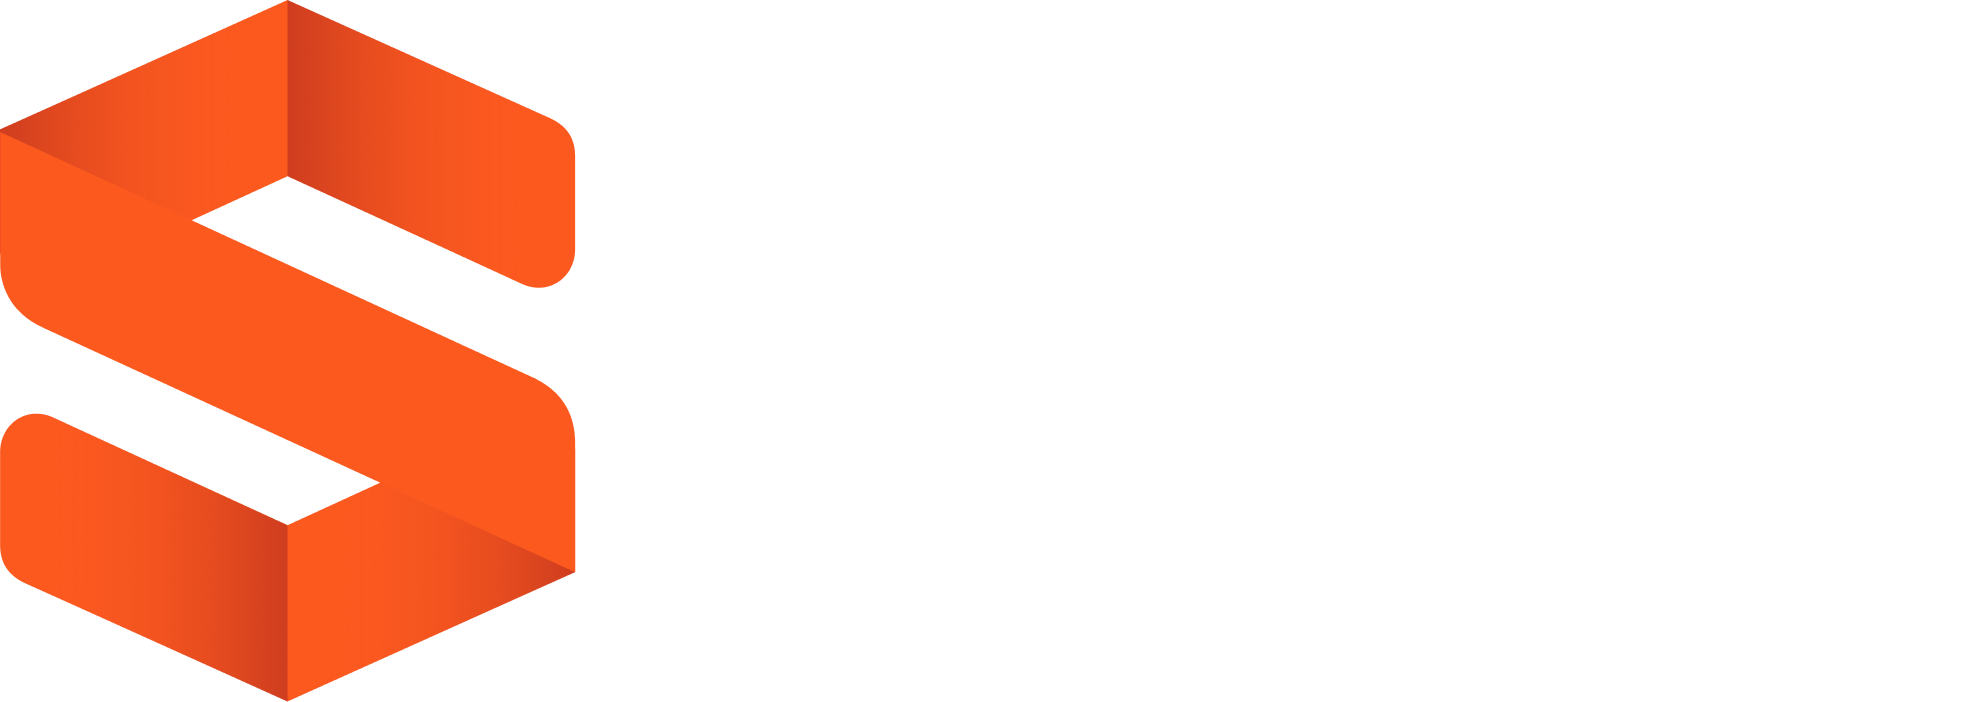 systematiq_white_logo